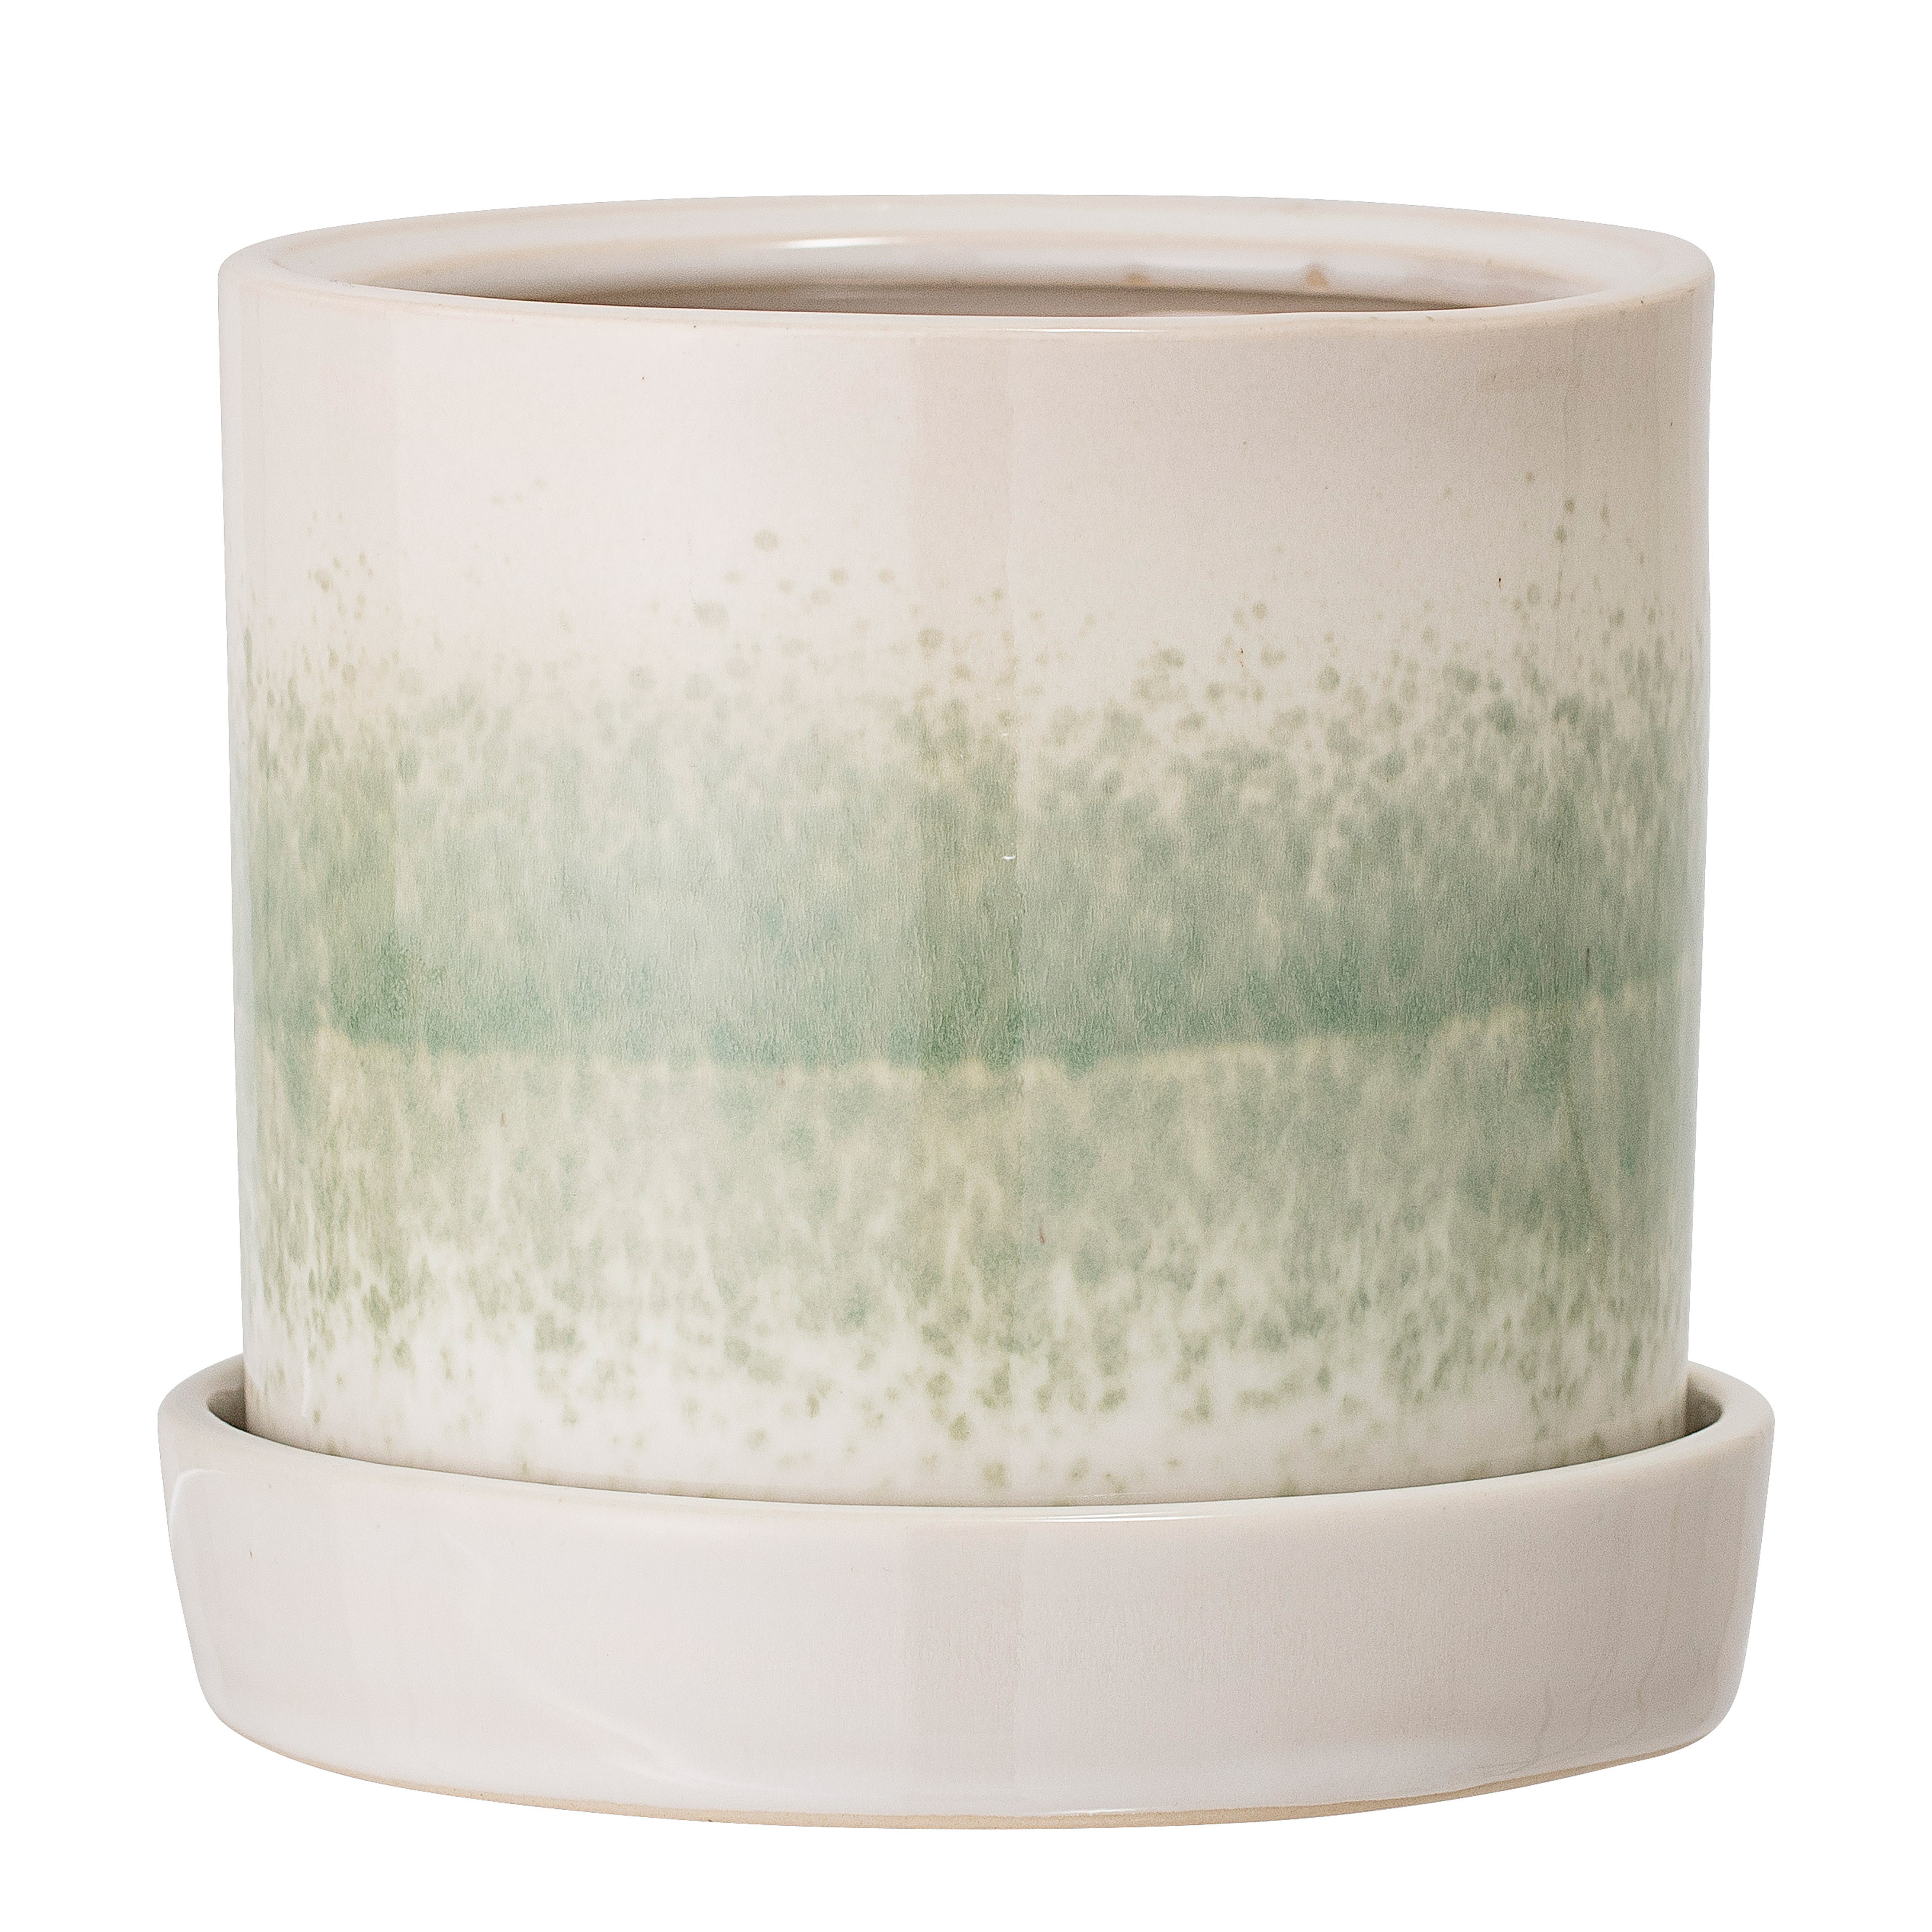 Round White & Green Stoneware Flower Pot with Saucer - Moss & Wilder